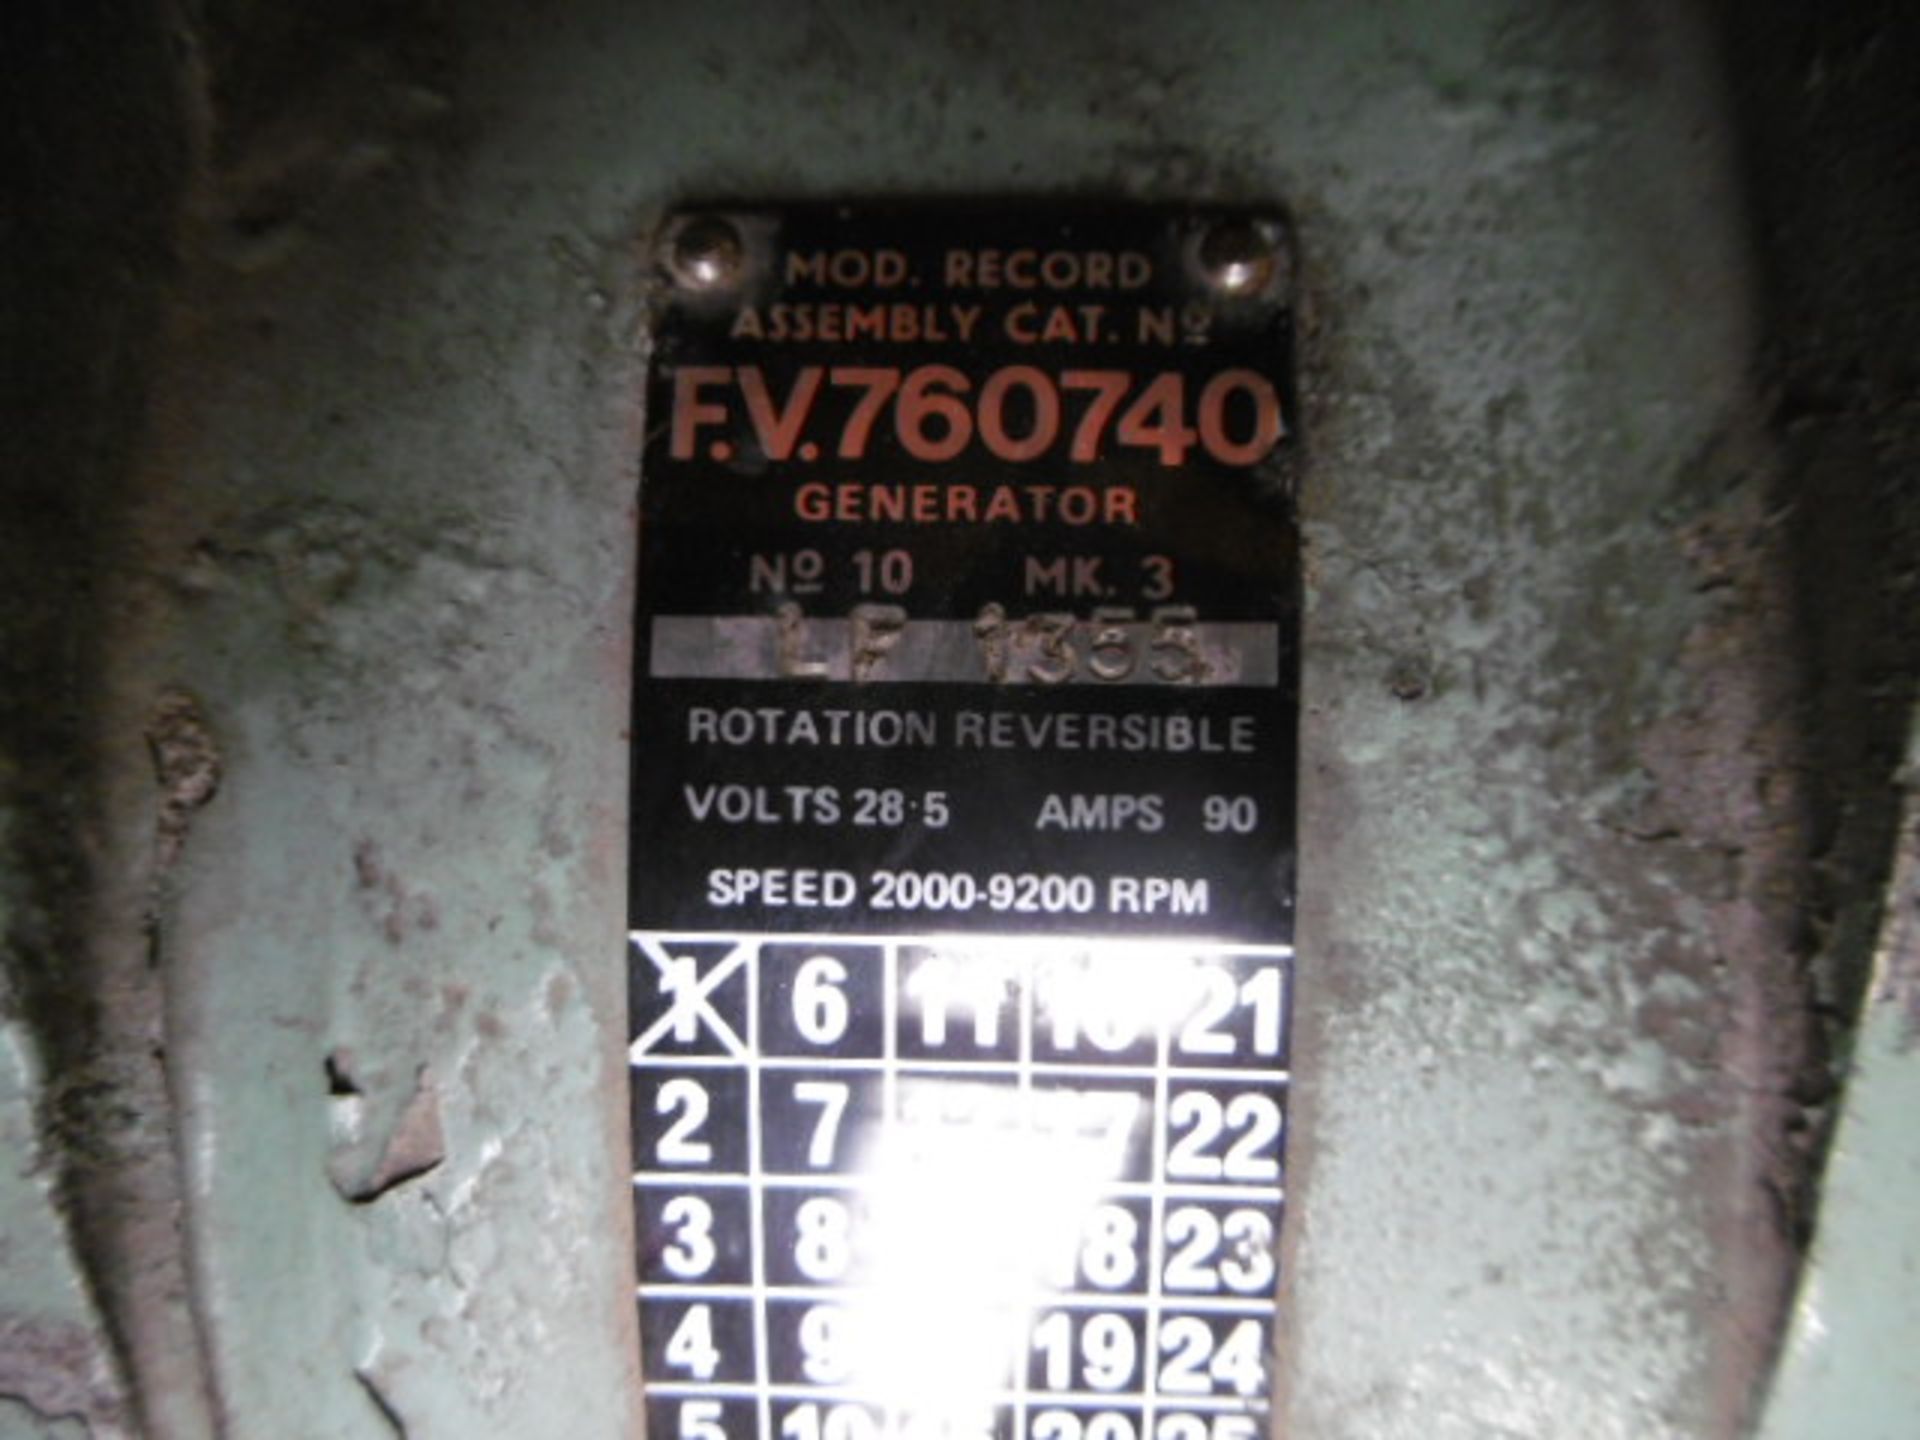 20 x Takeout 24V Alternators P/No FV760740 - Image 2 of 6